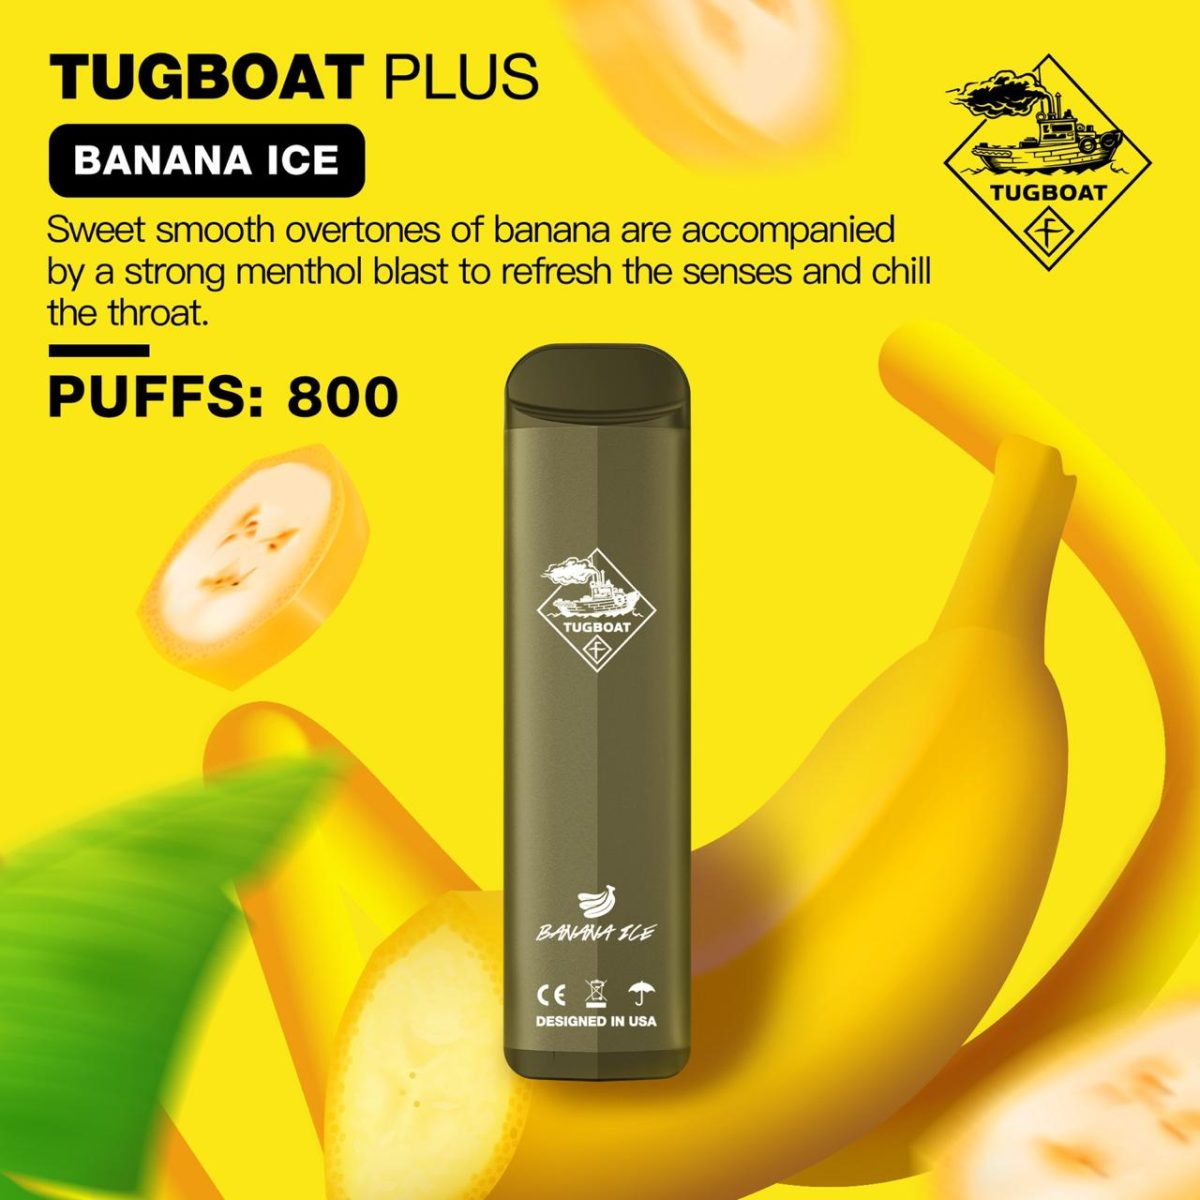 Tugboat Plus Banana Ice